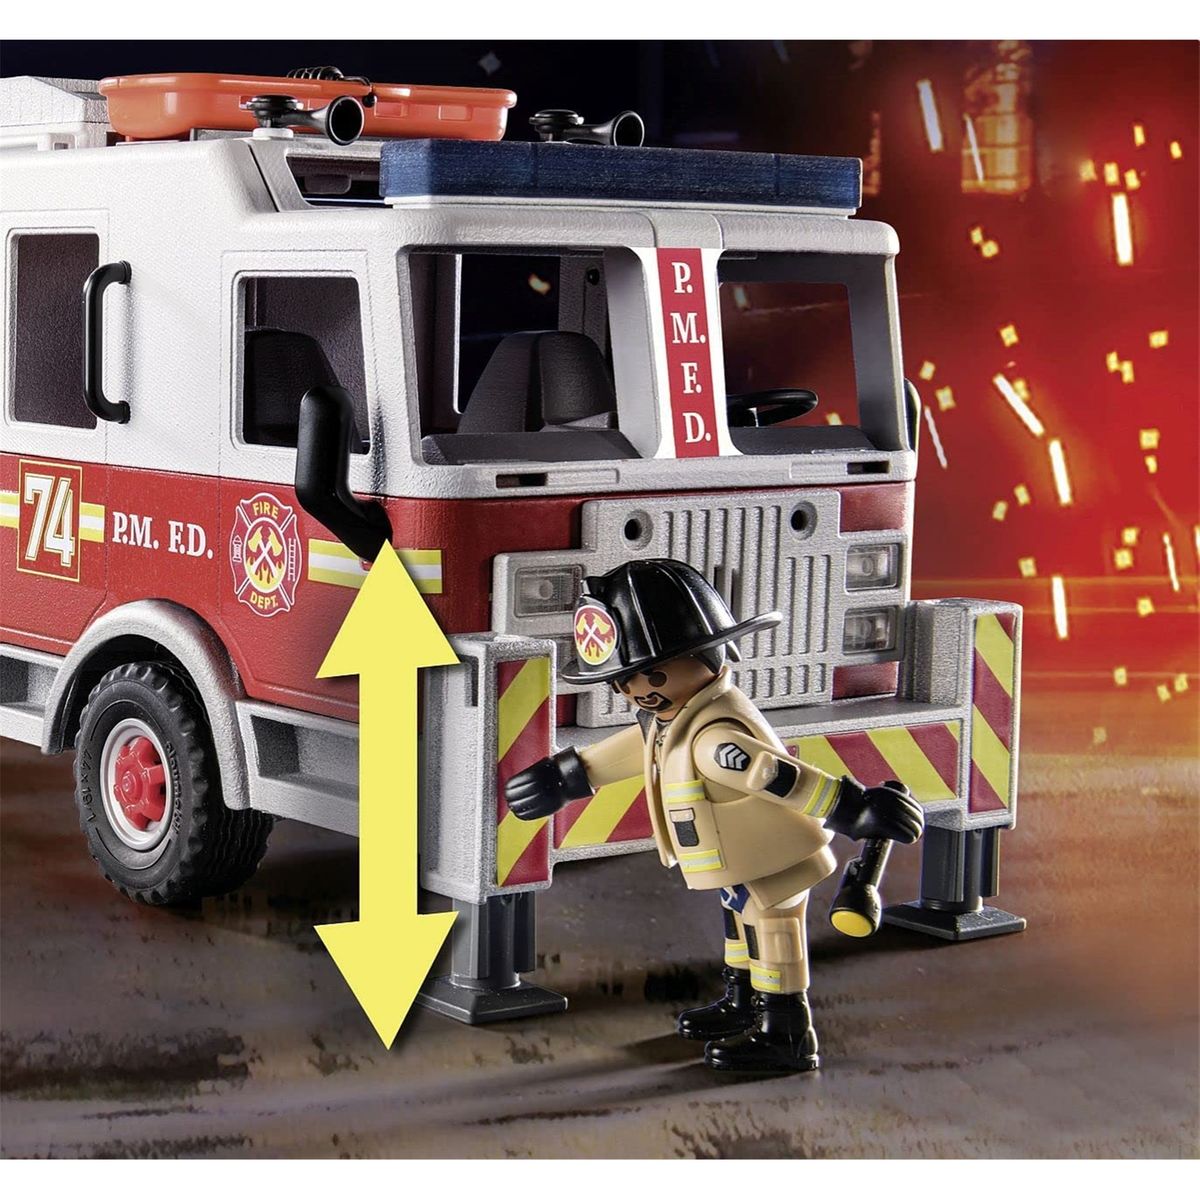 Playmobil 70935 camion de pompiers avec échelle - city action - les pompiers  - secours américain effets lumineux Playmobil